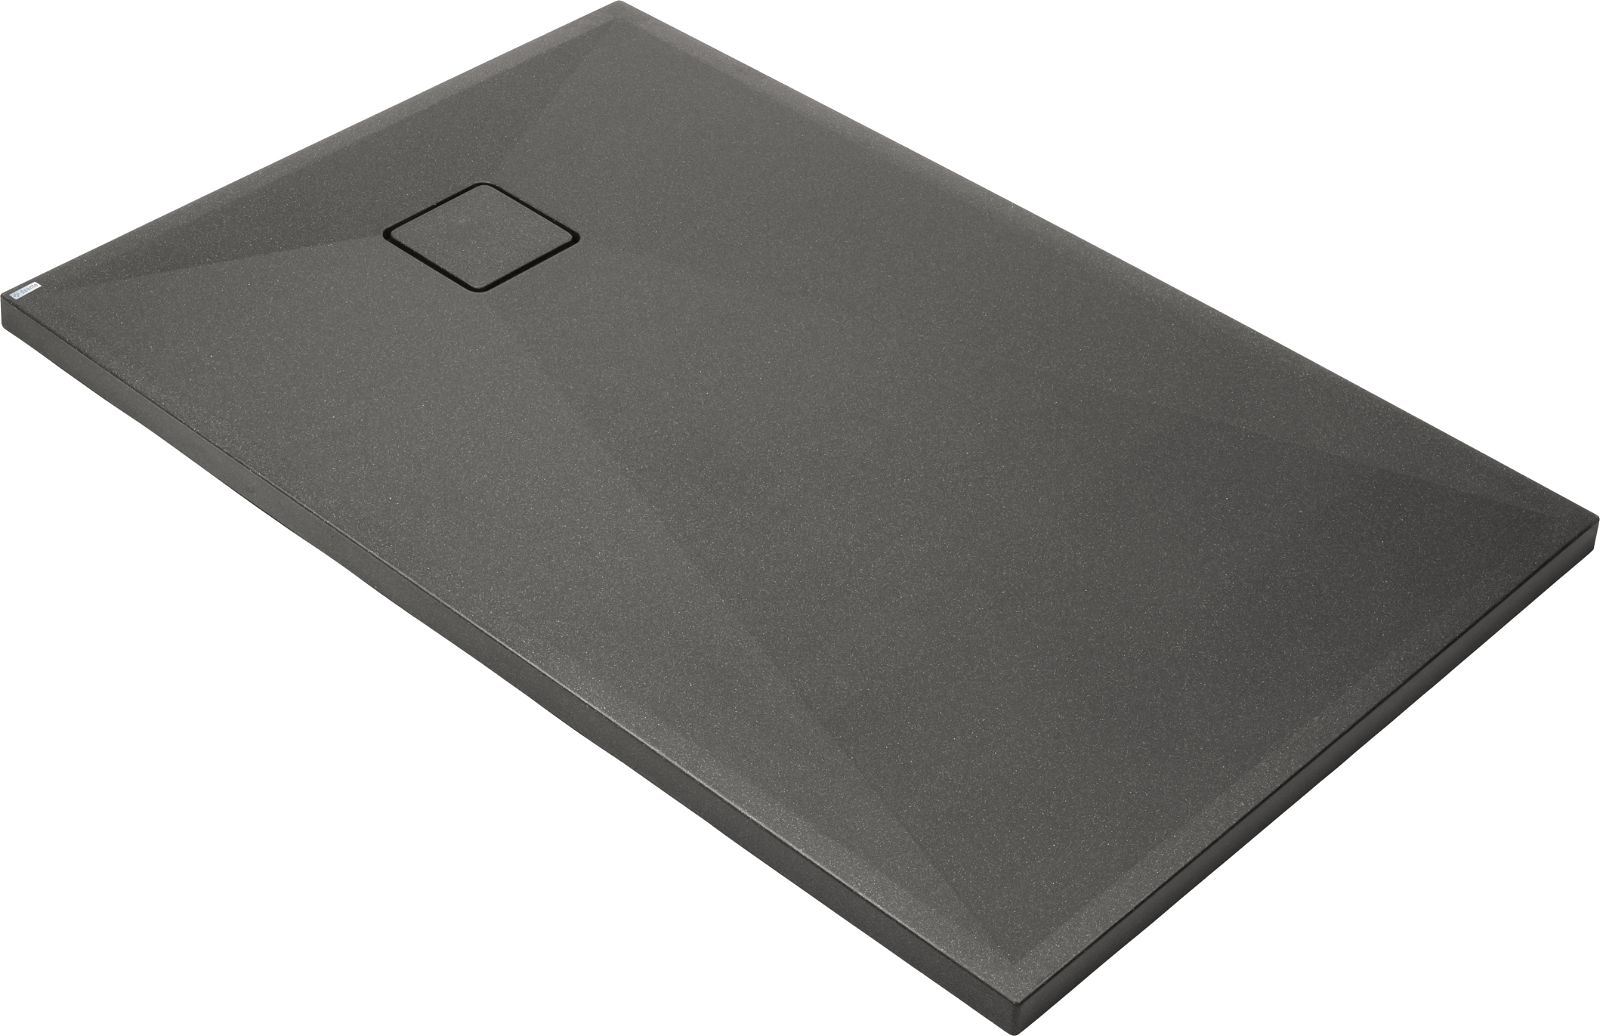 Granite shower tray, rectangular, 120x80 cm - KQR_T44B - Główne zdjęcie produktowe